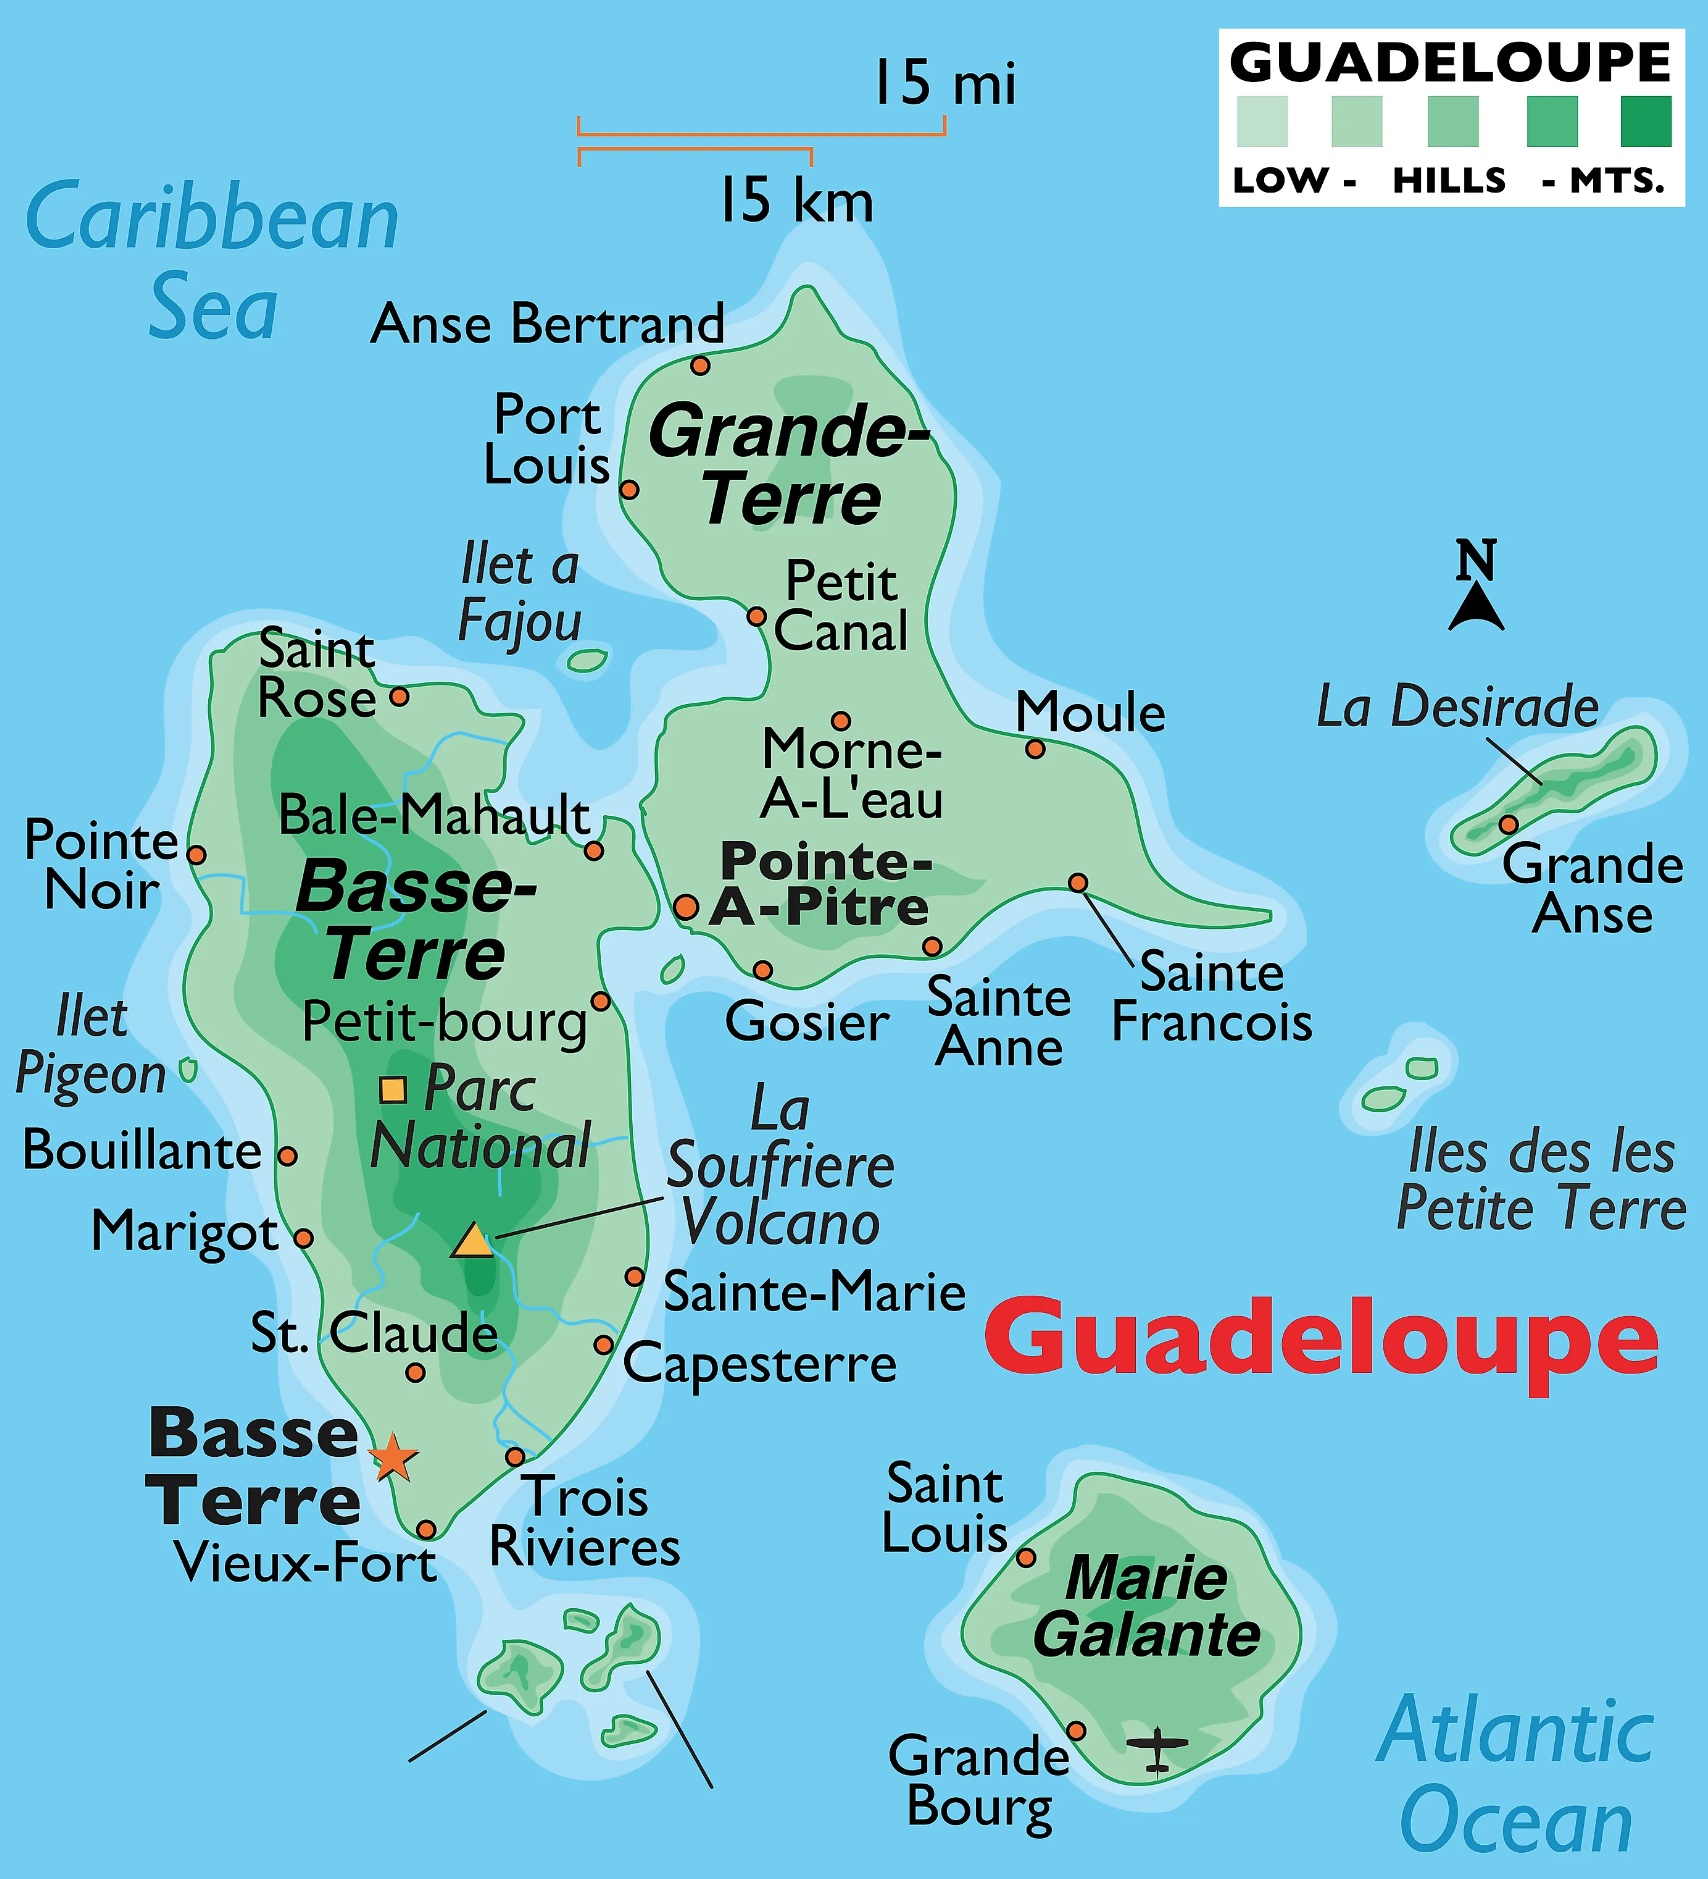 Mapa Guadeloupe a názvy měst